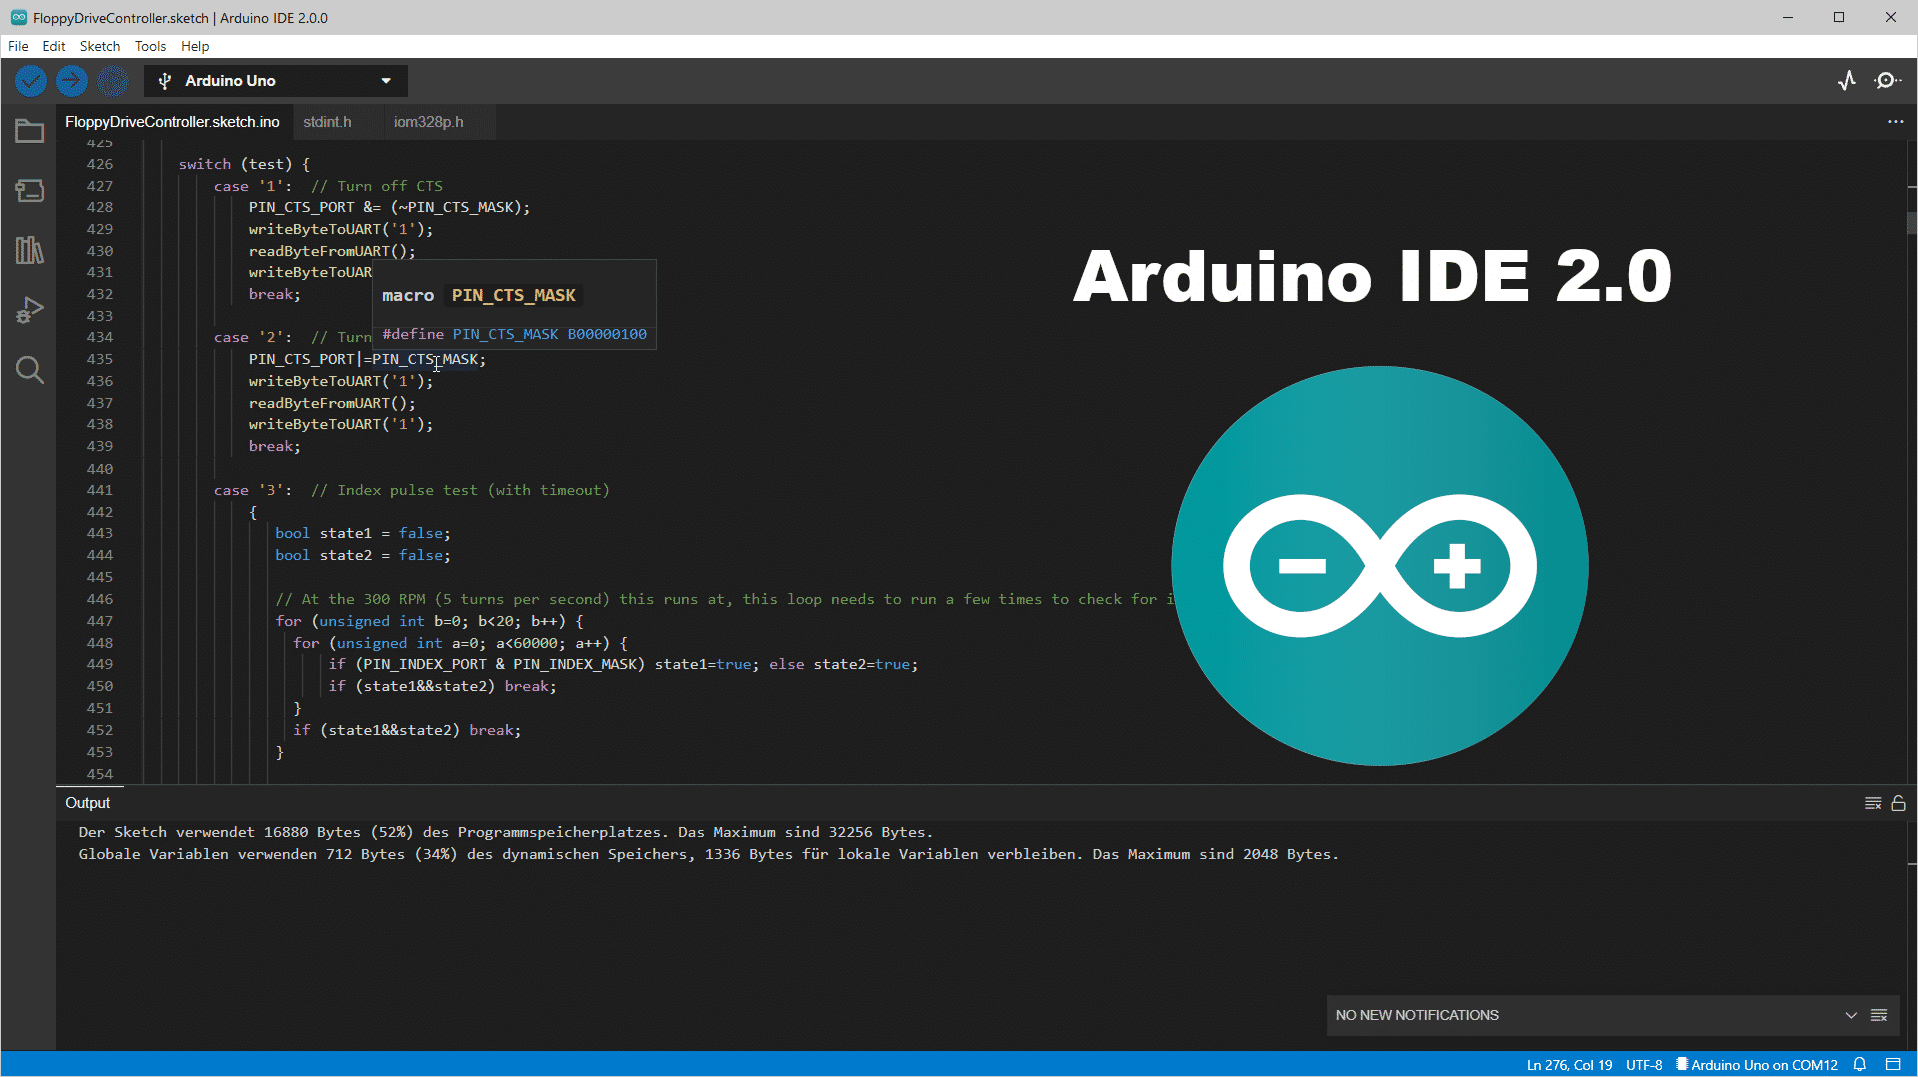 Die neue Version 2.0 der Arduino IDE